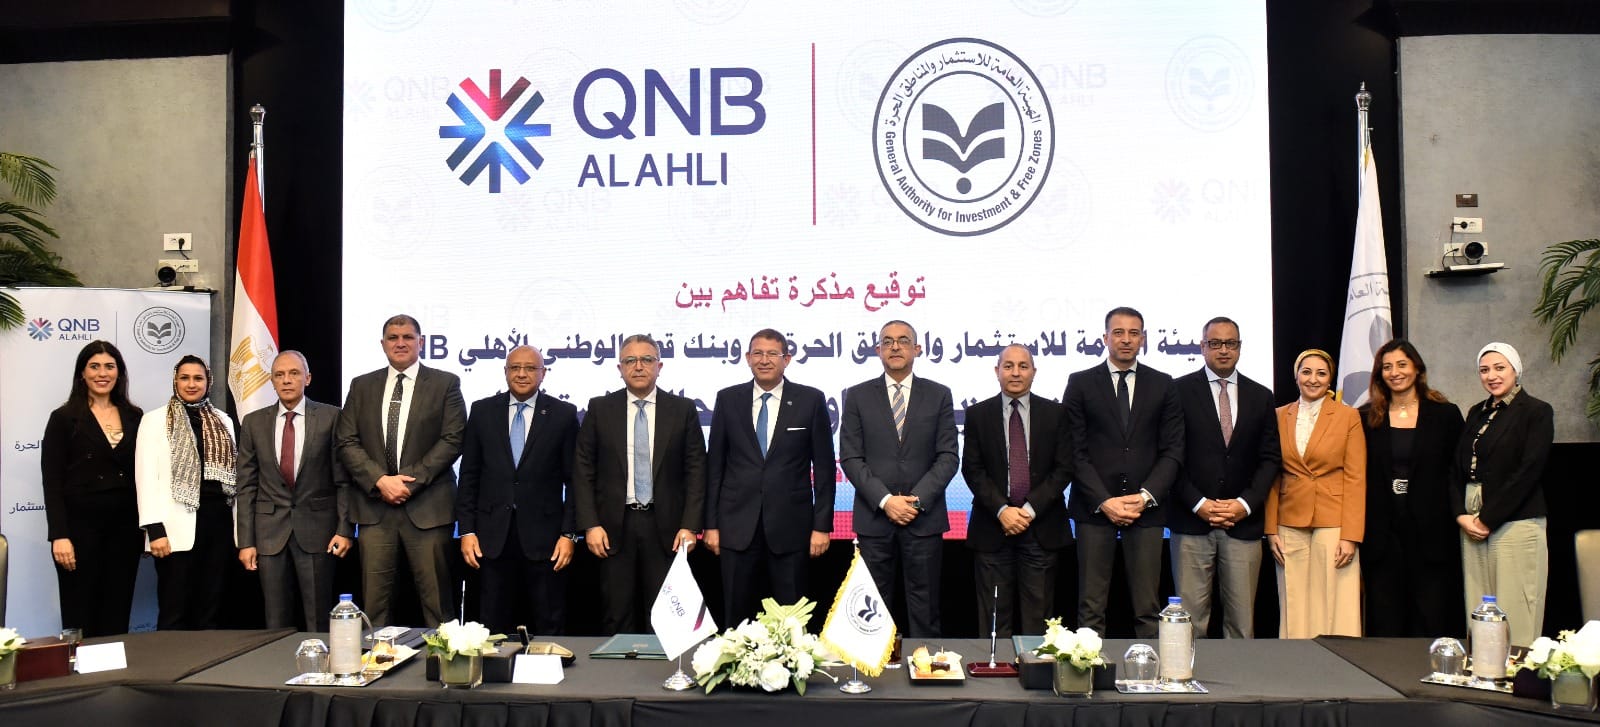 بروتوكول تعاون بين الهيئة العامة للاستثمار وبنك قطر الوطني